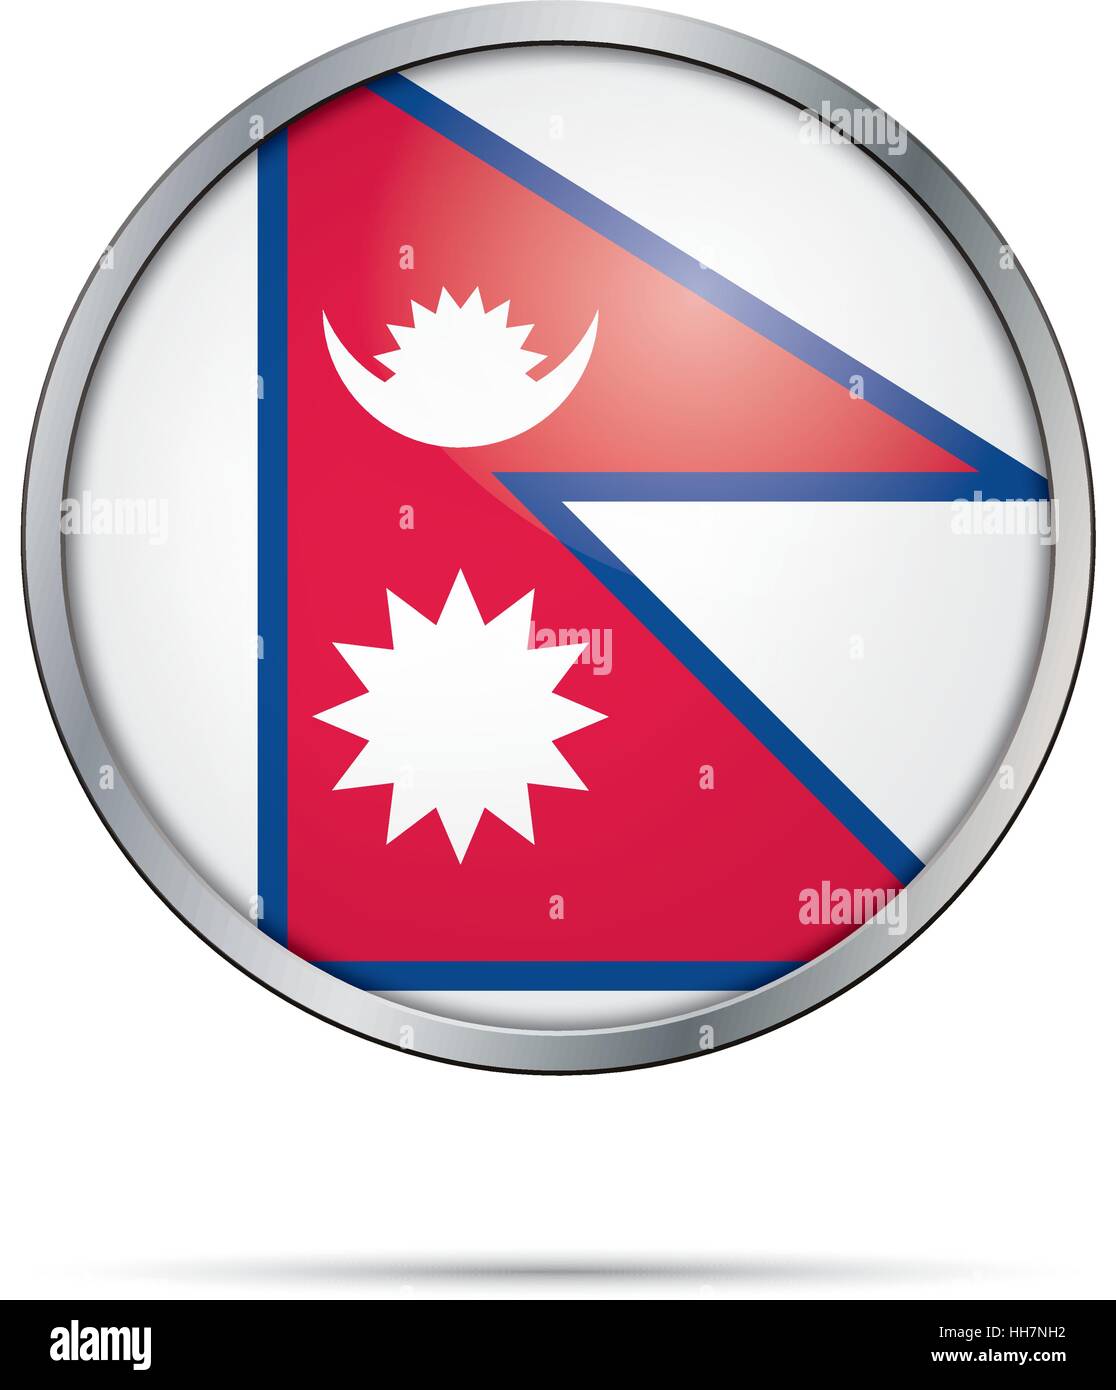 Álbumes 92+ Foto Imágenes De La Bandera De Nepal El último